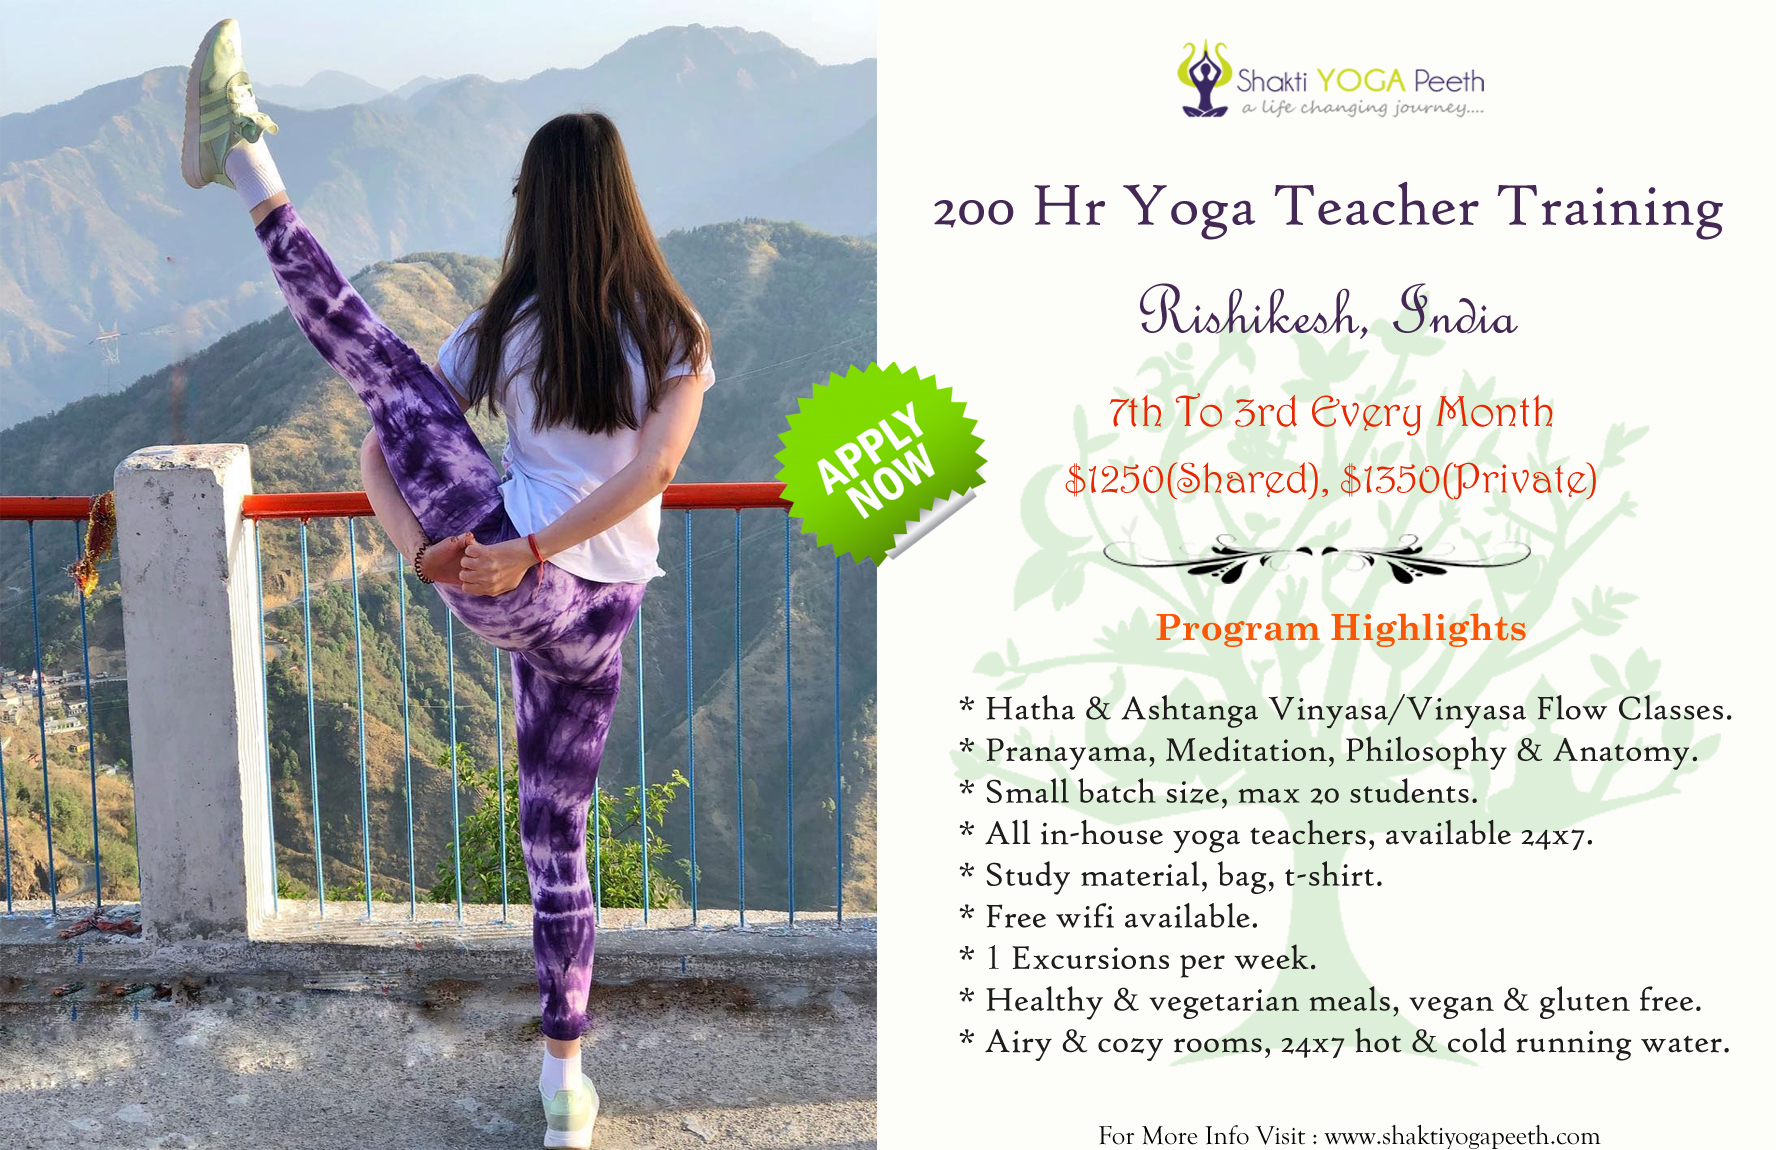 Register For 200 Hr Yoga Teacher Training in Rishikesh India